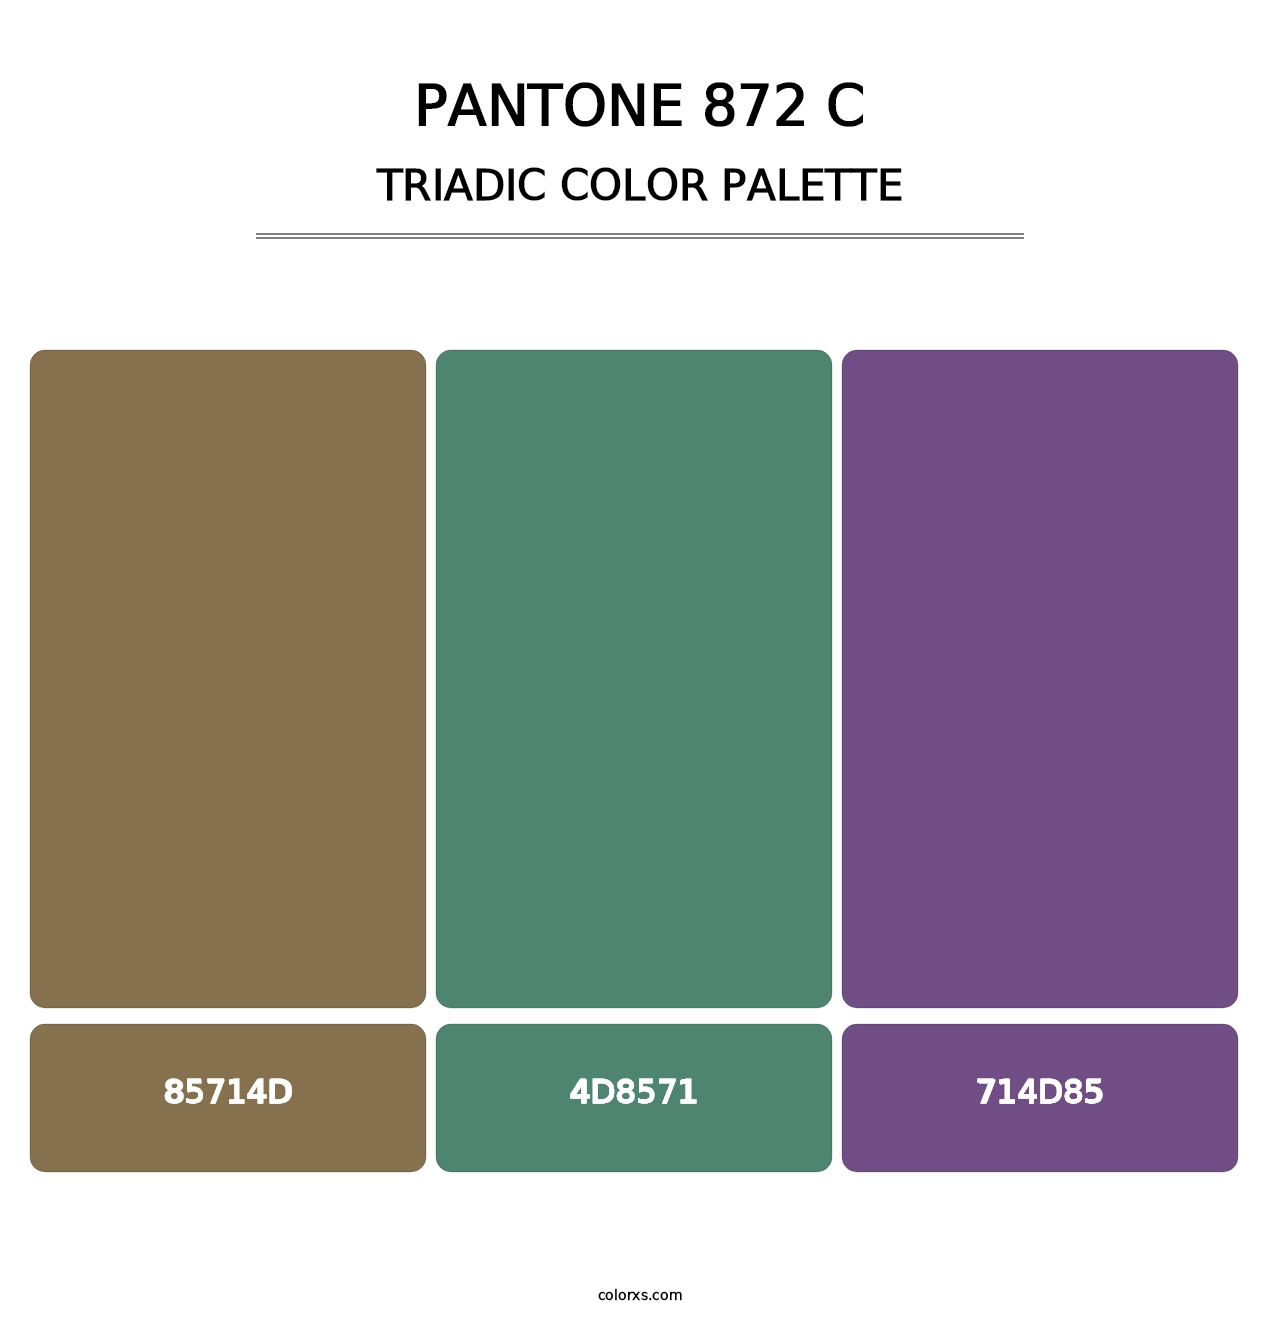 PANTONE 872 C - Triadic Color Palette